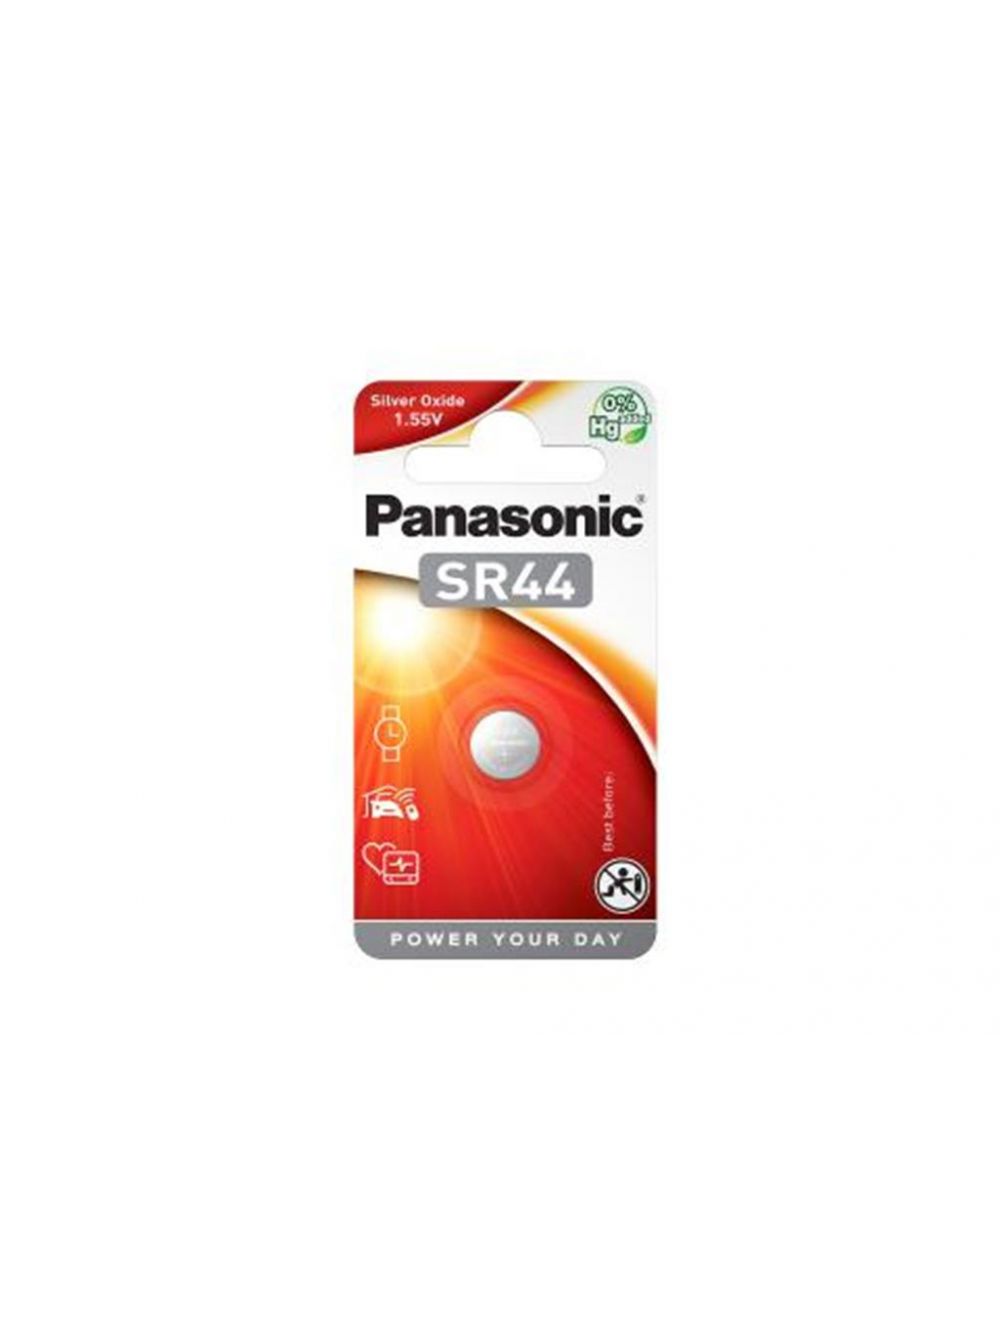 Batterie Panasonic SR44 1.55V Silver Oxide SR 44 Type D357